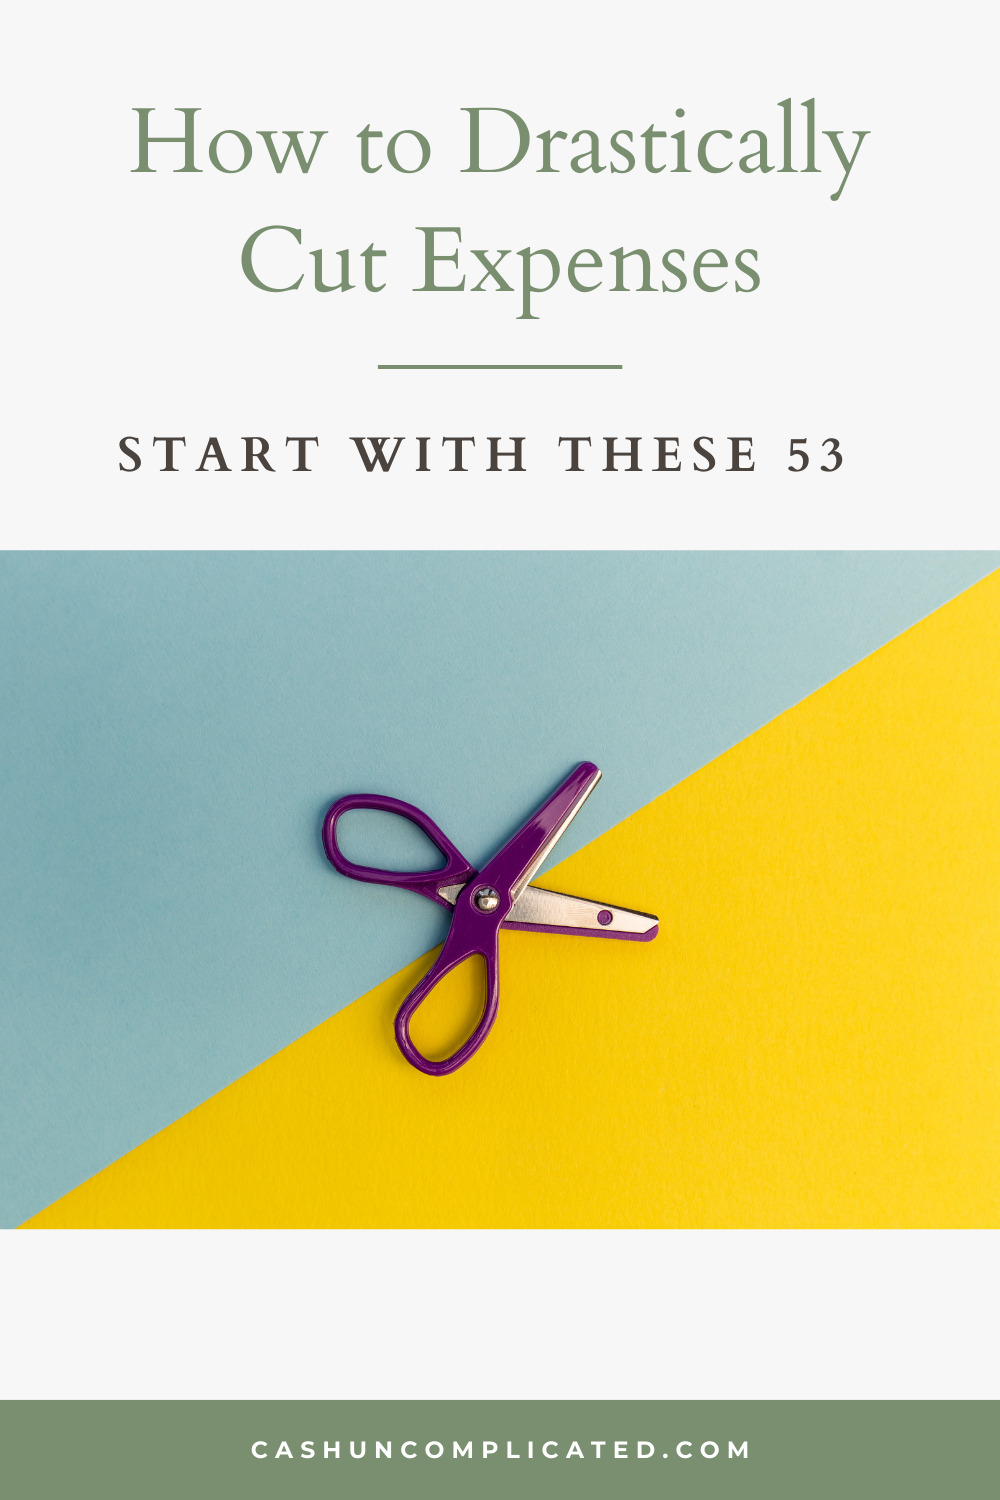 Scissors to cut expenses